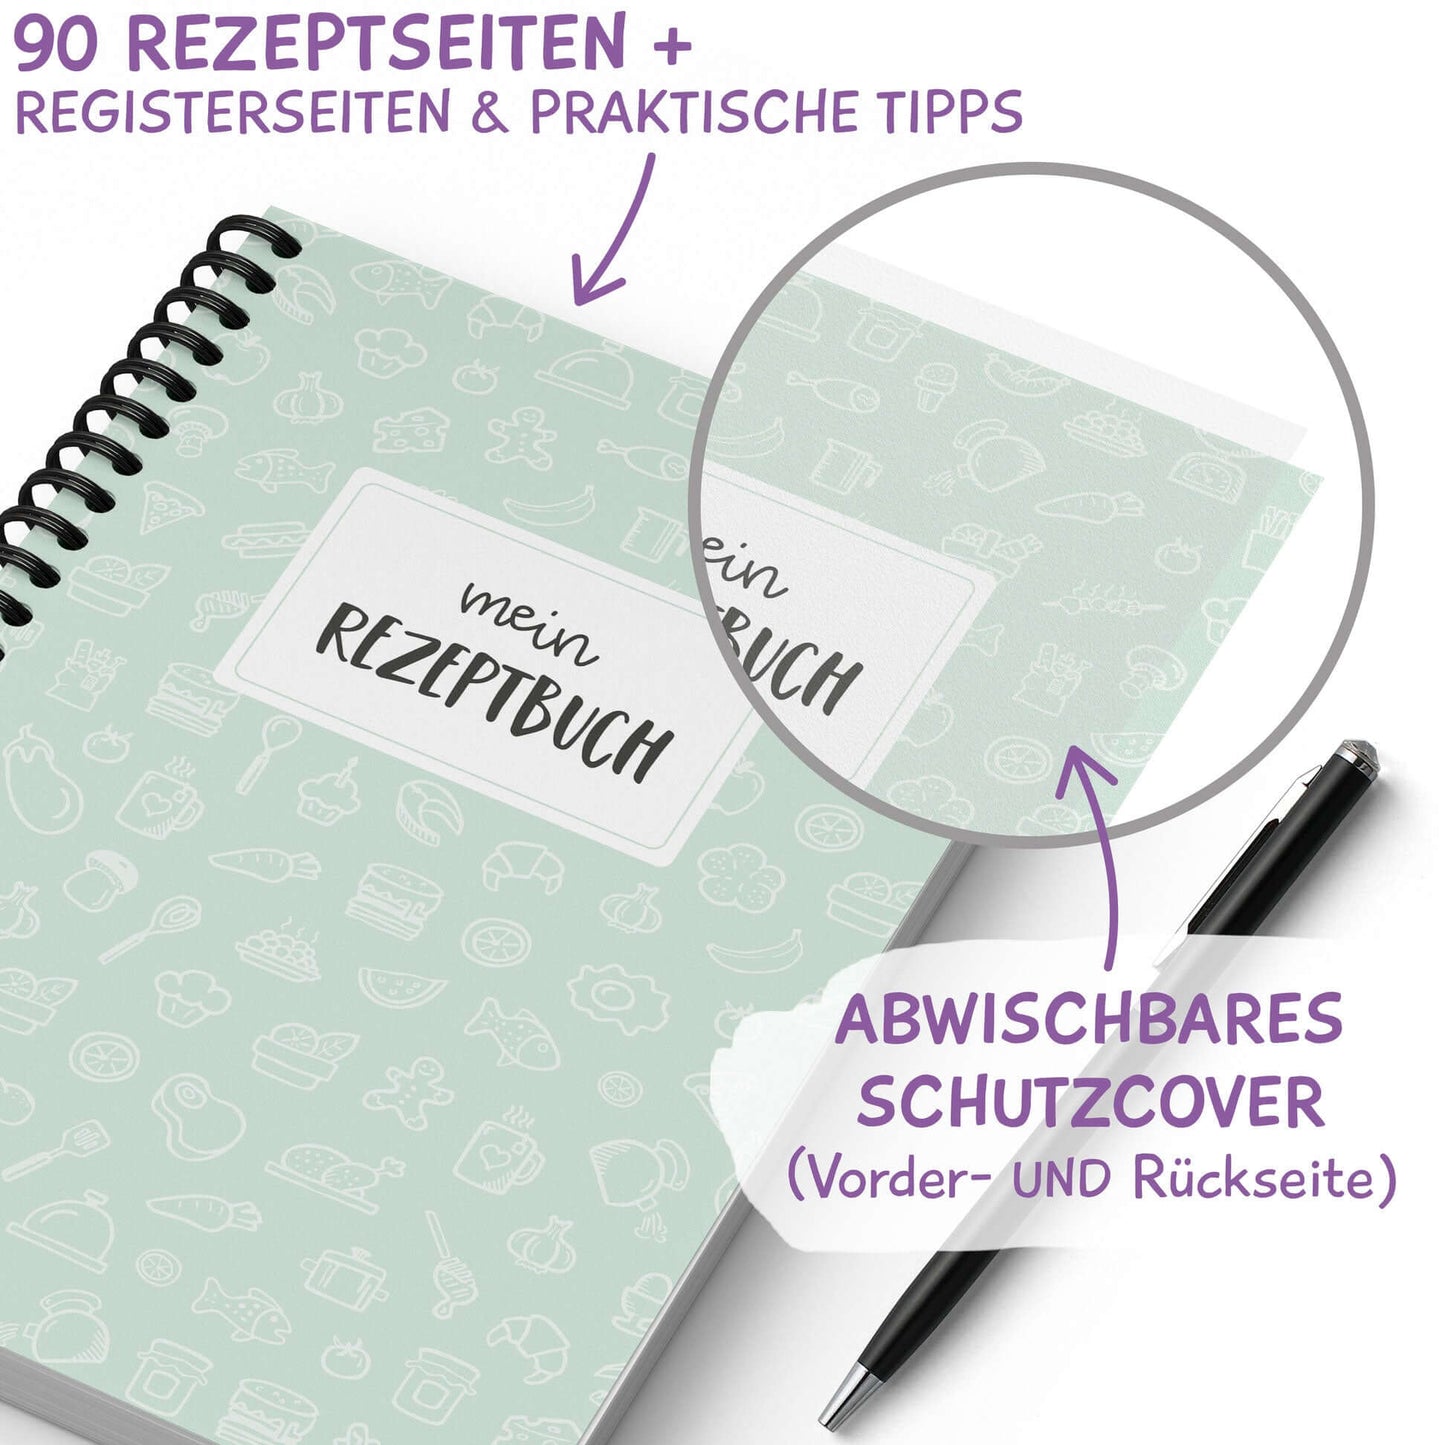 Rezeptbuch zum Selberschreiben mit Schutzcover an Vorder- und Rückseite